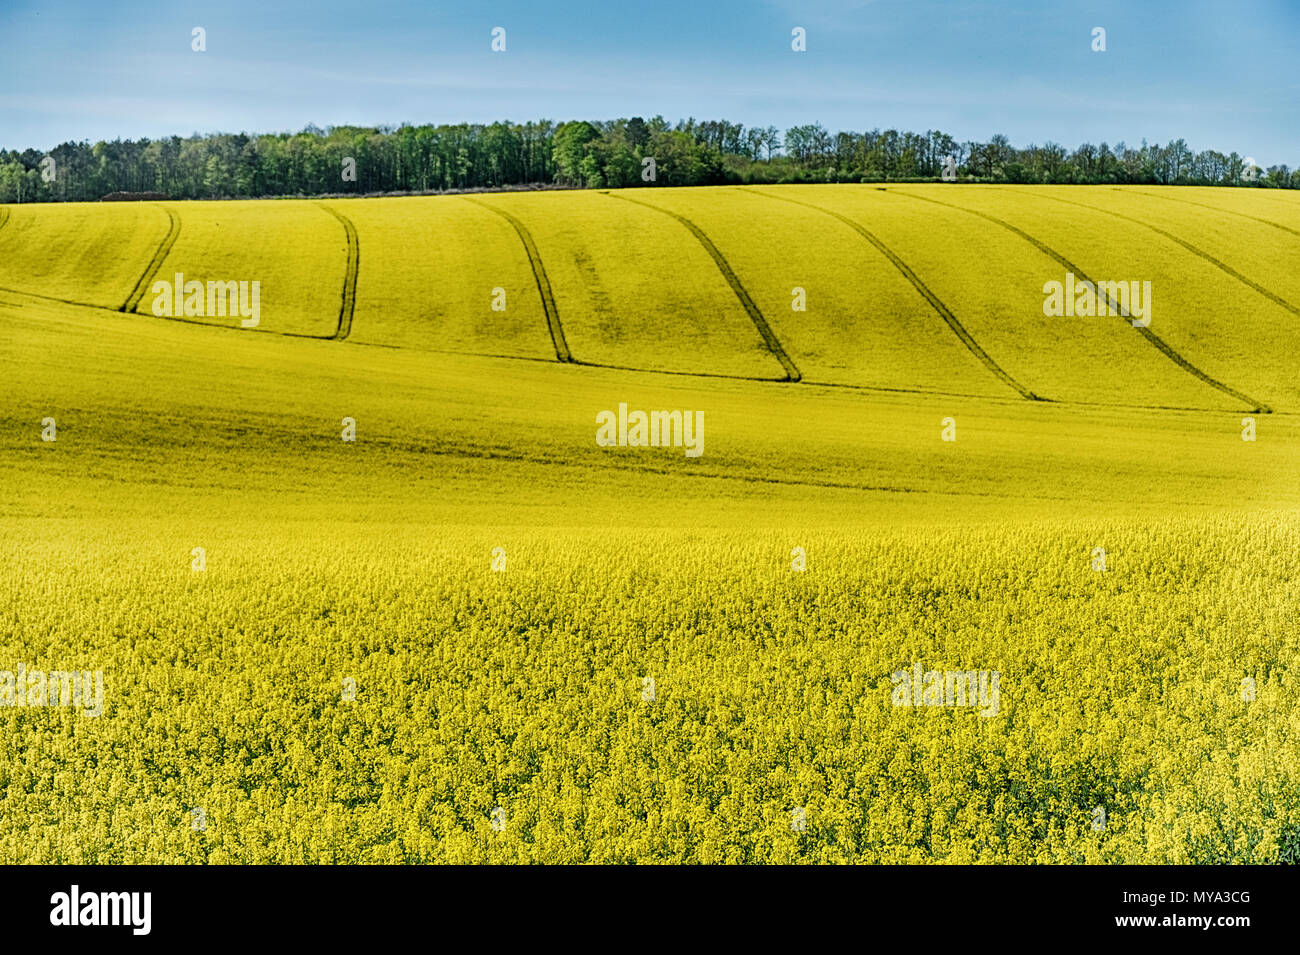 Le colline vicino a Auxerre e Chablis sono coperti con un luminoso giallo senape fiori. Questo è tipico di un importante prodotto agricolo nelle zone rurali della Francia. Foto Stock